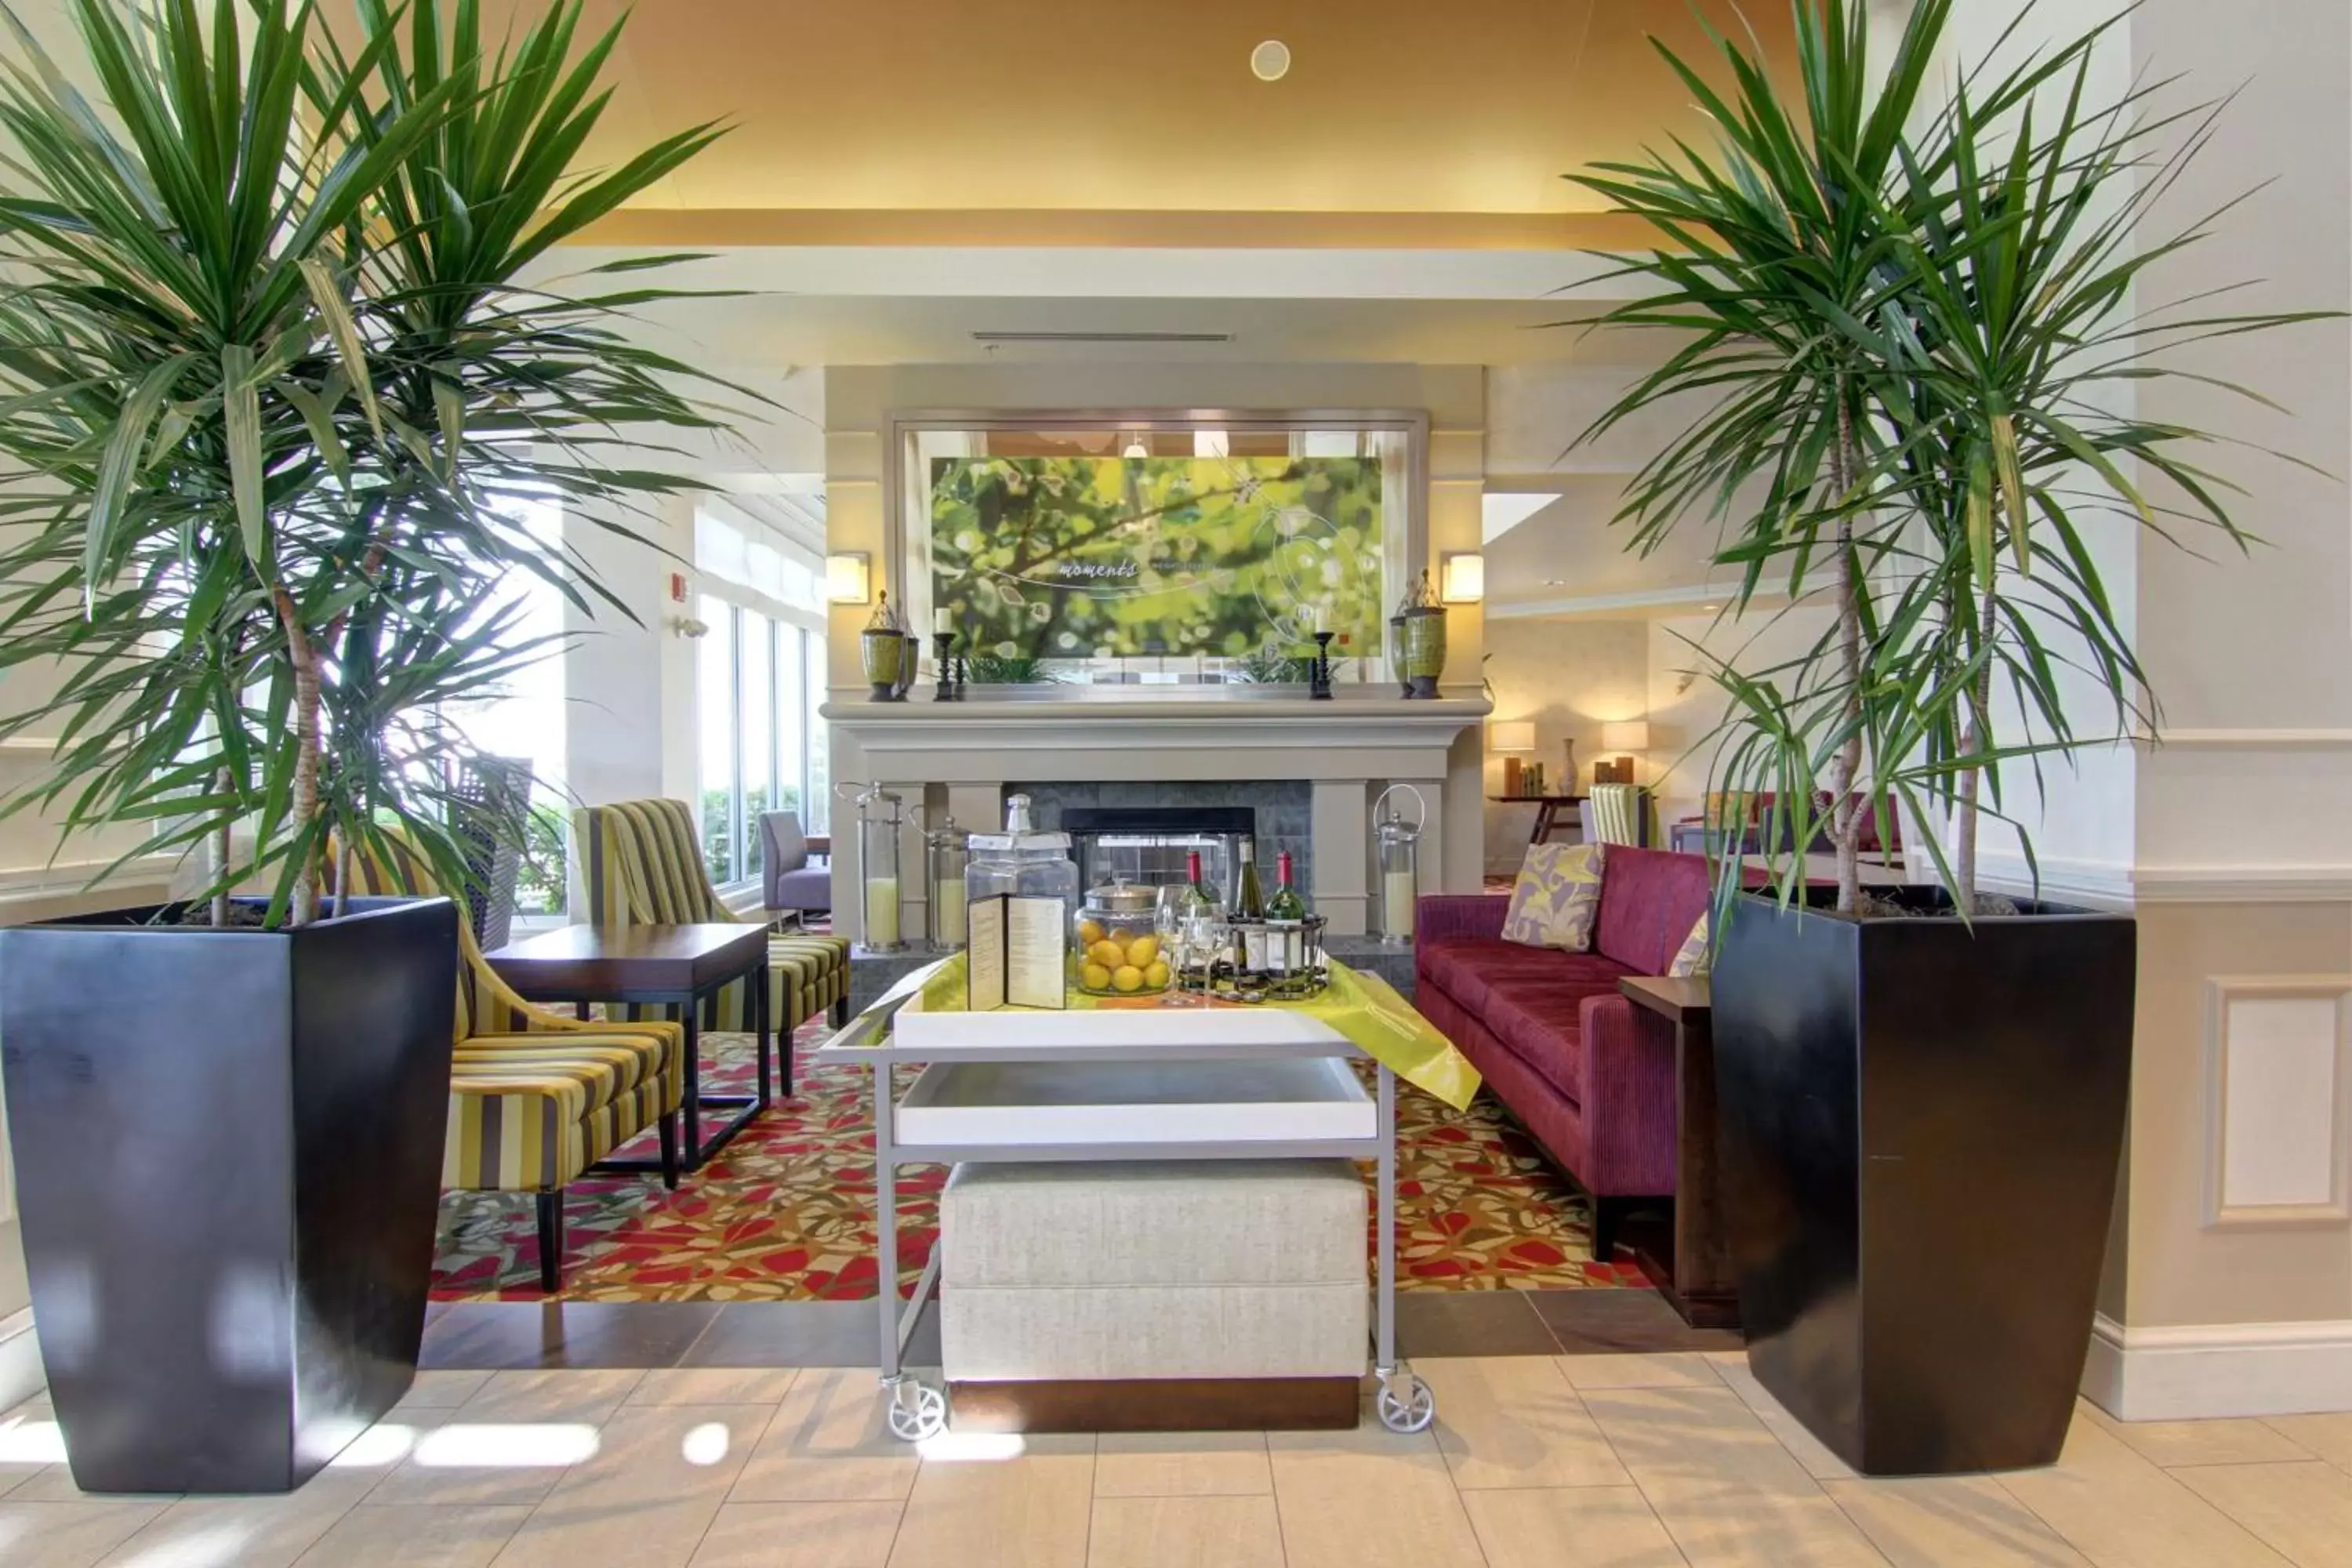 Lobby or reception, Lobby/Reception in Hilton Garden Inn Calgary Airport